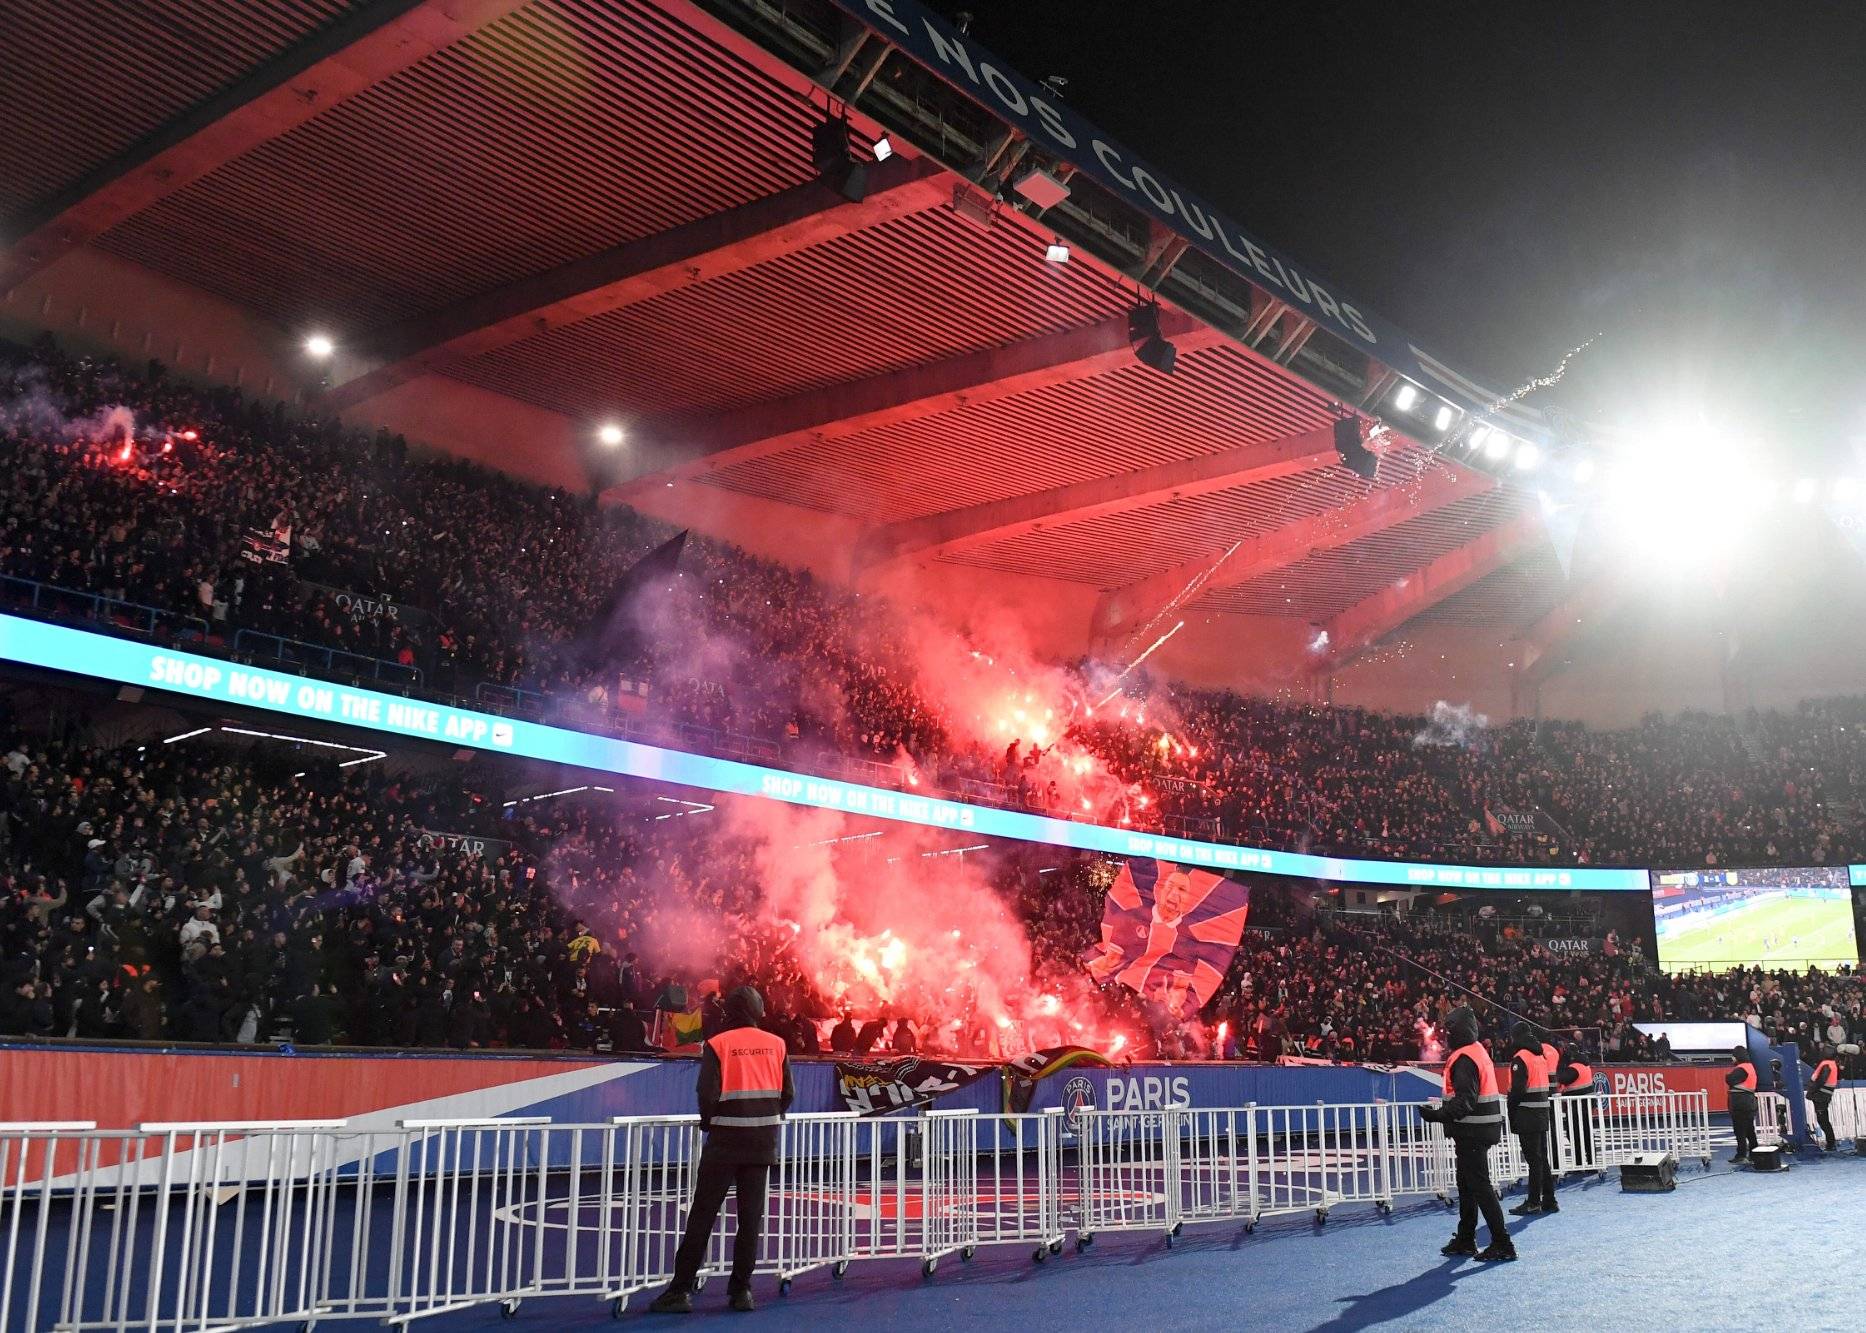 球迷骚乱冲突愈演愈烈 法国内政部将在8场比赛中禁止客队球迷观赛